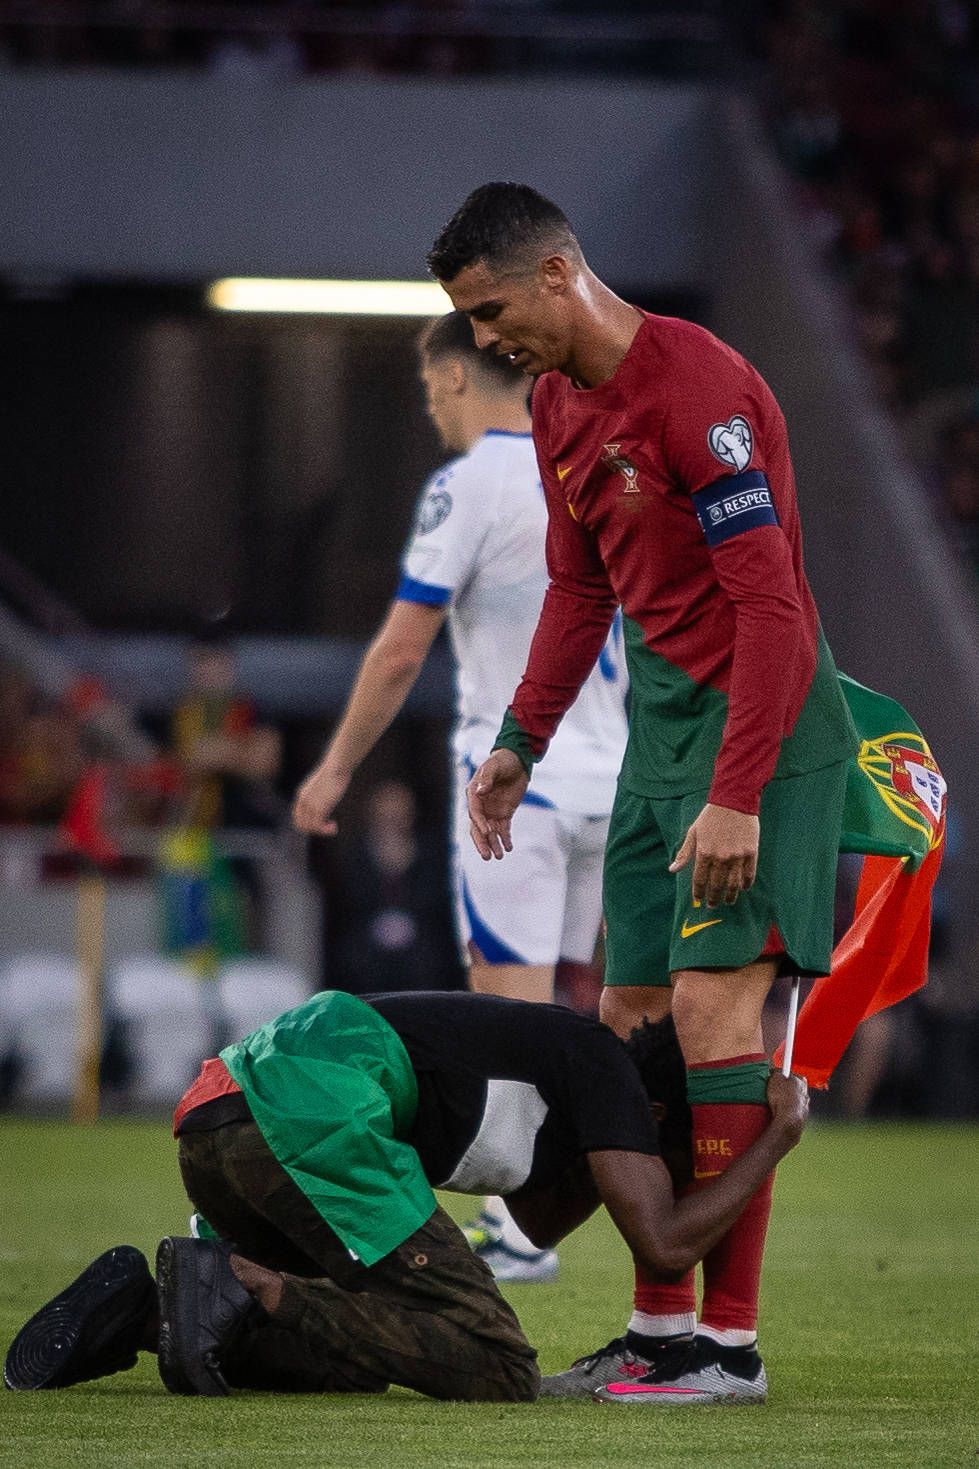 E faza serii! A sărit pe teren și l-a ridicat în brațe pe Cristiano Ronaldo ca pe un fulg! Cum a reacționat portughezul _6